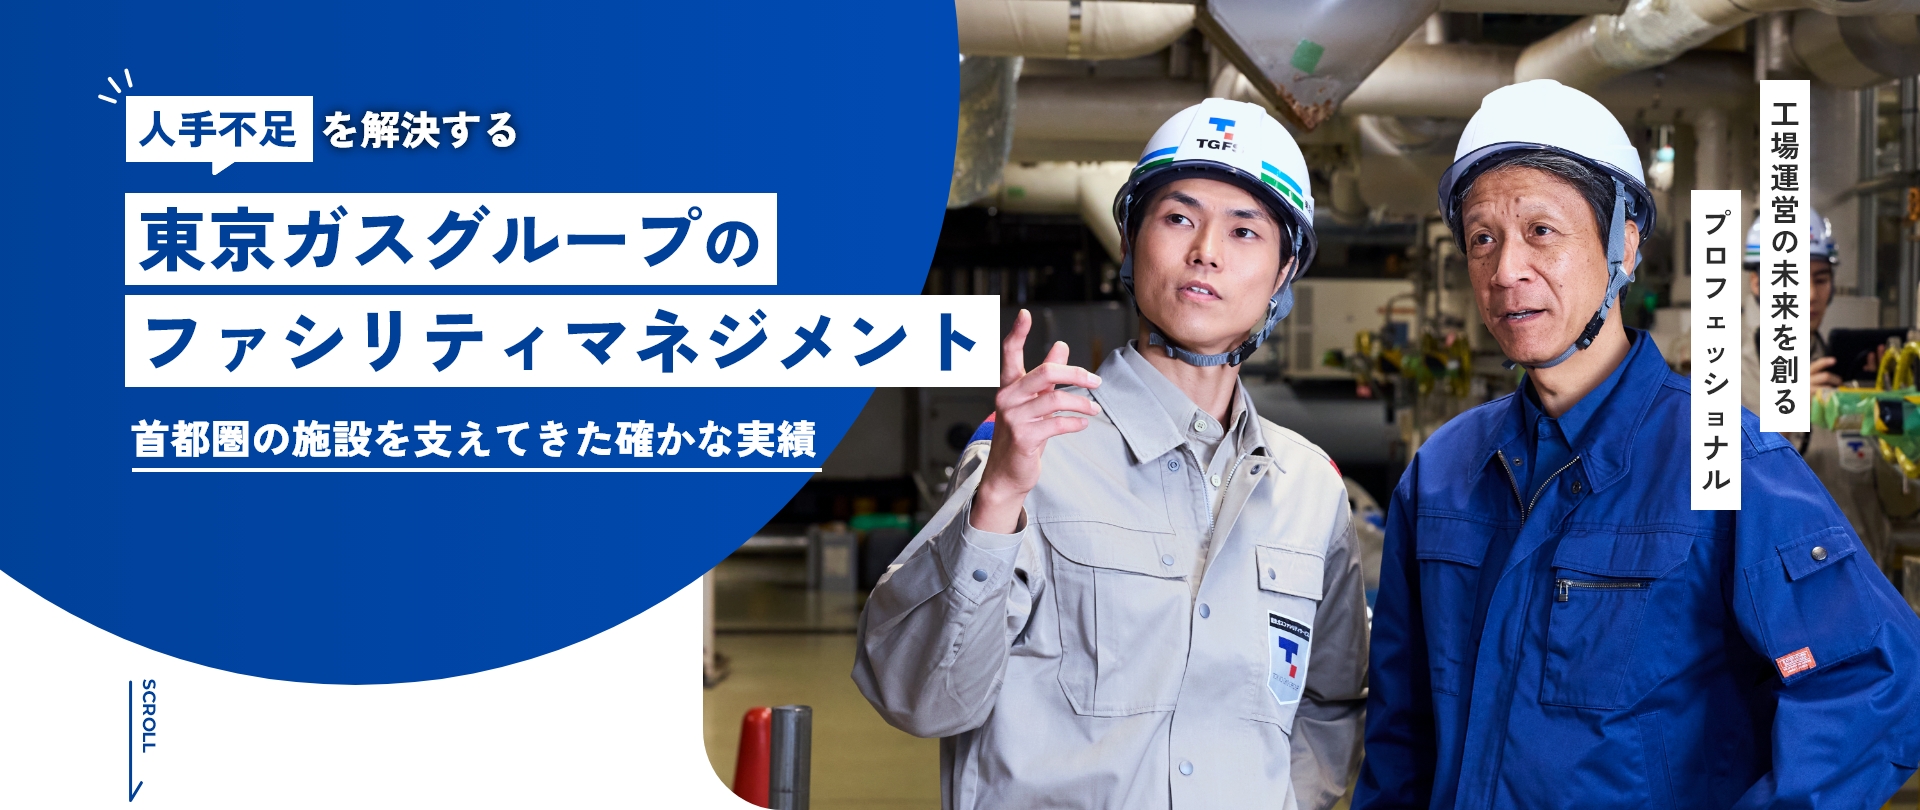 人手不足を解消する東京ガスグループのファシリティマネジメント 首都圏の施設を支えてきた確かな実績 工場運営の未来を創るプロフェッショナル